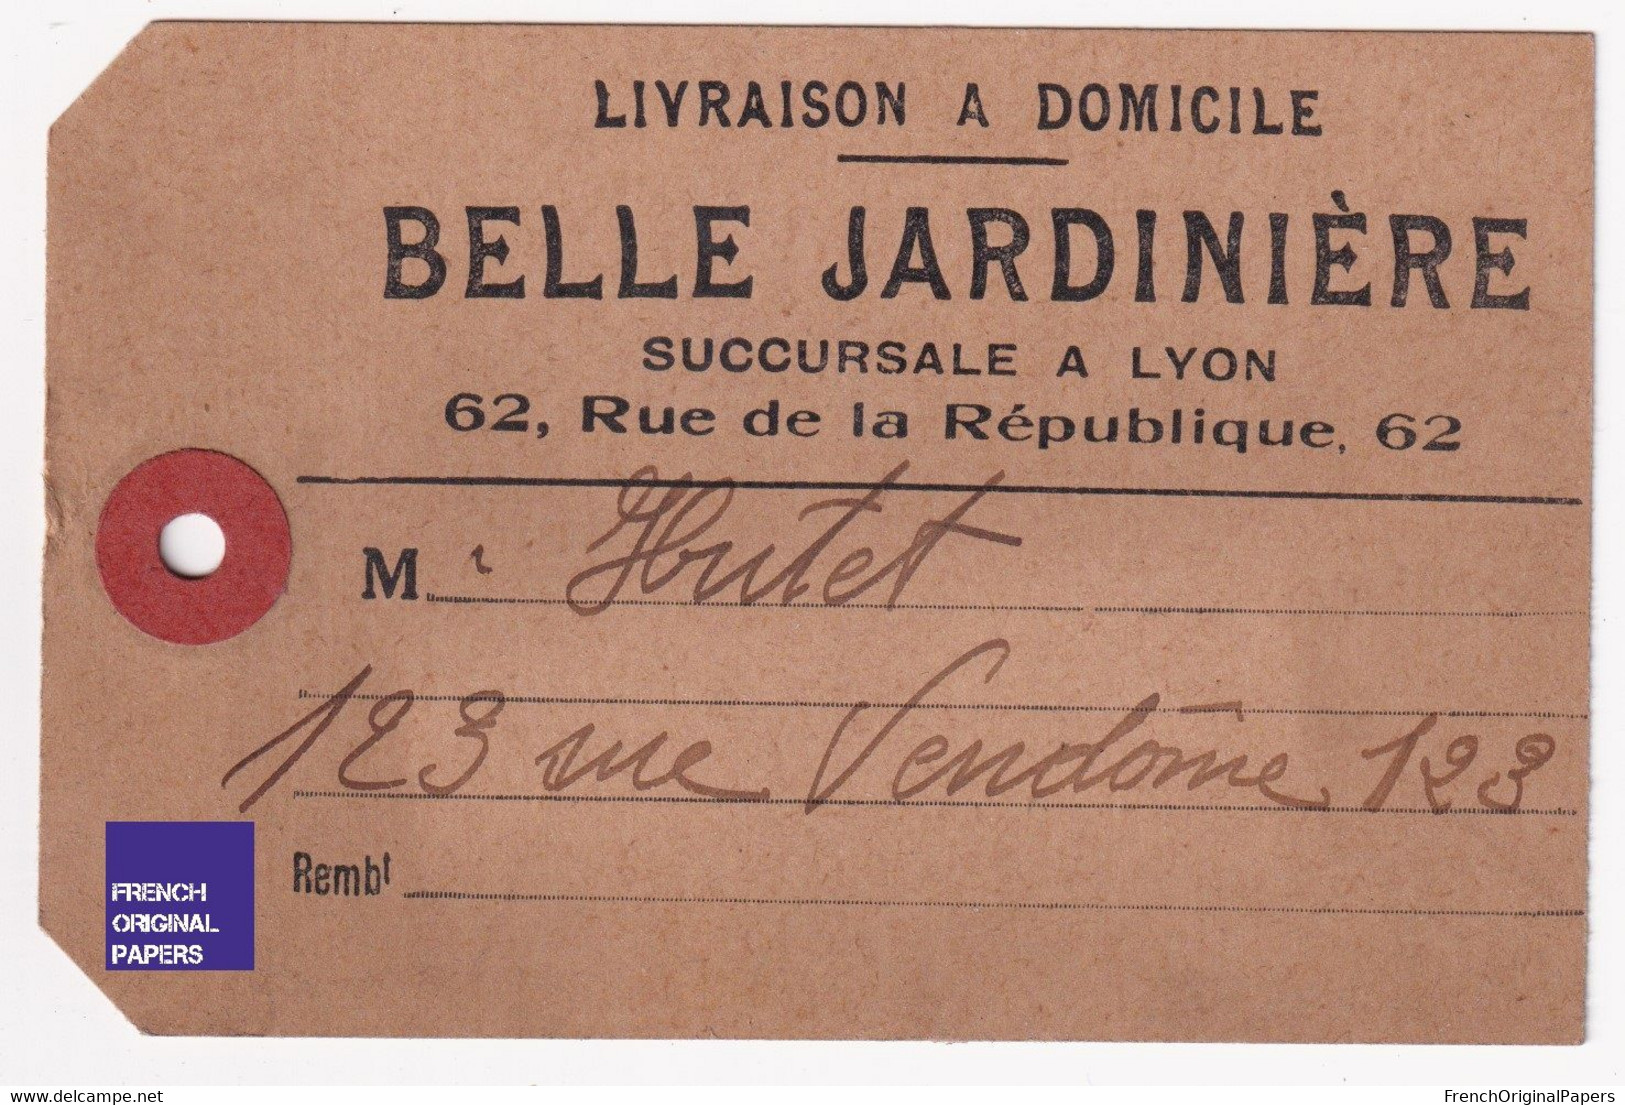 Rare étiquette De Colis De Livraison - Magasin Belle Jardinière Succursale De Lyon Années 1900/10 123 Rue Vendôme A55-76 - Publicidad